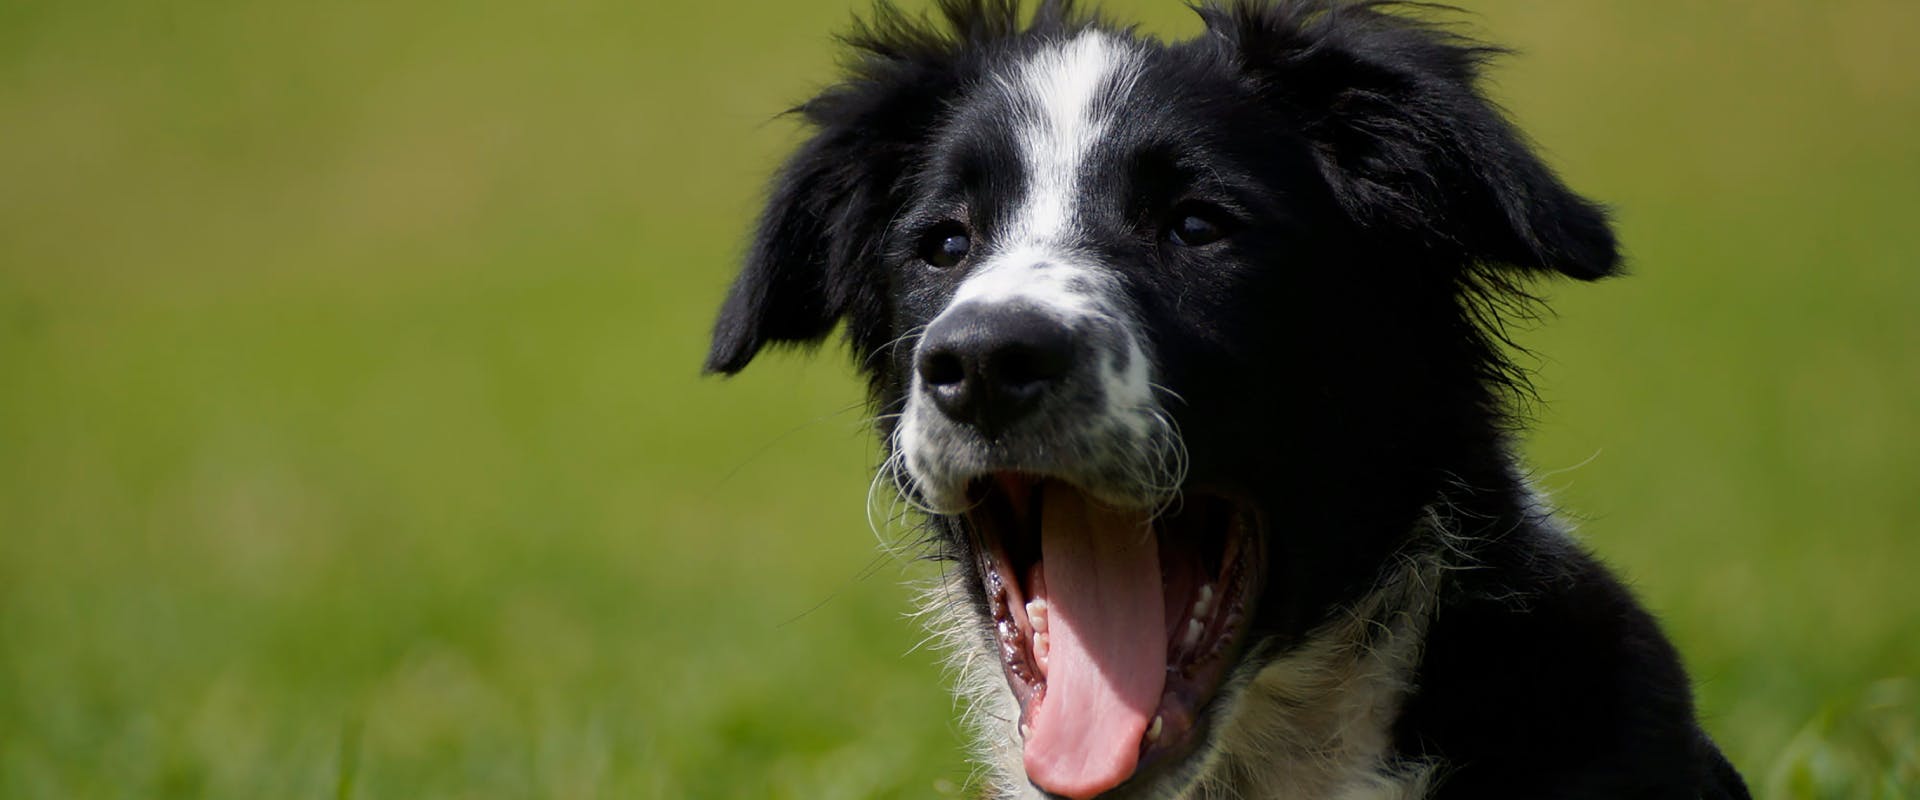 A puppy yawns.